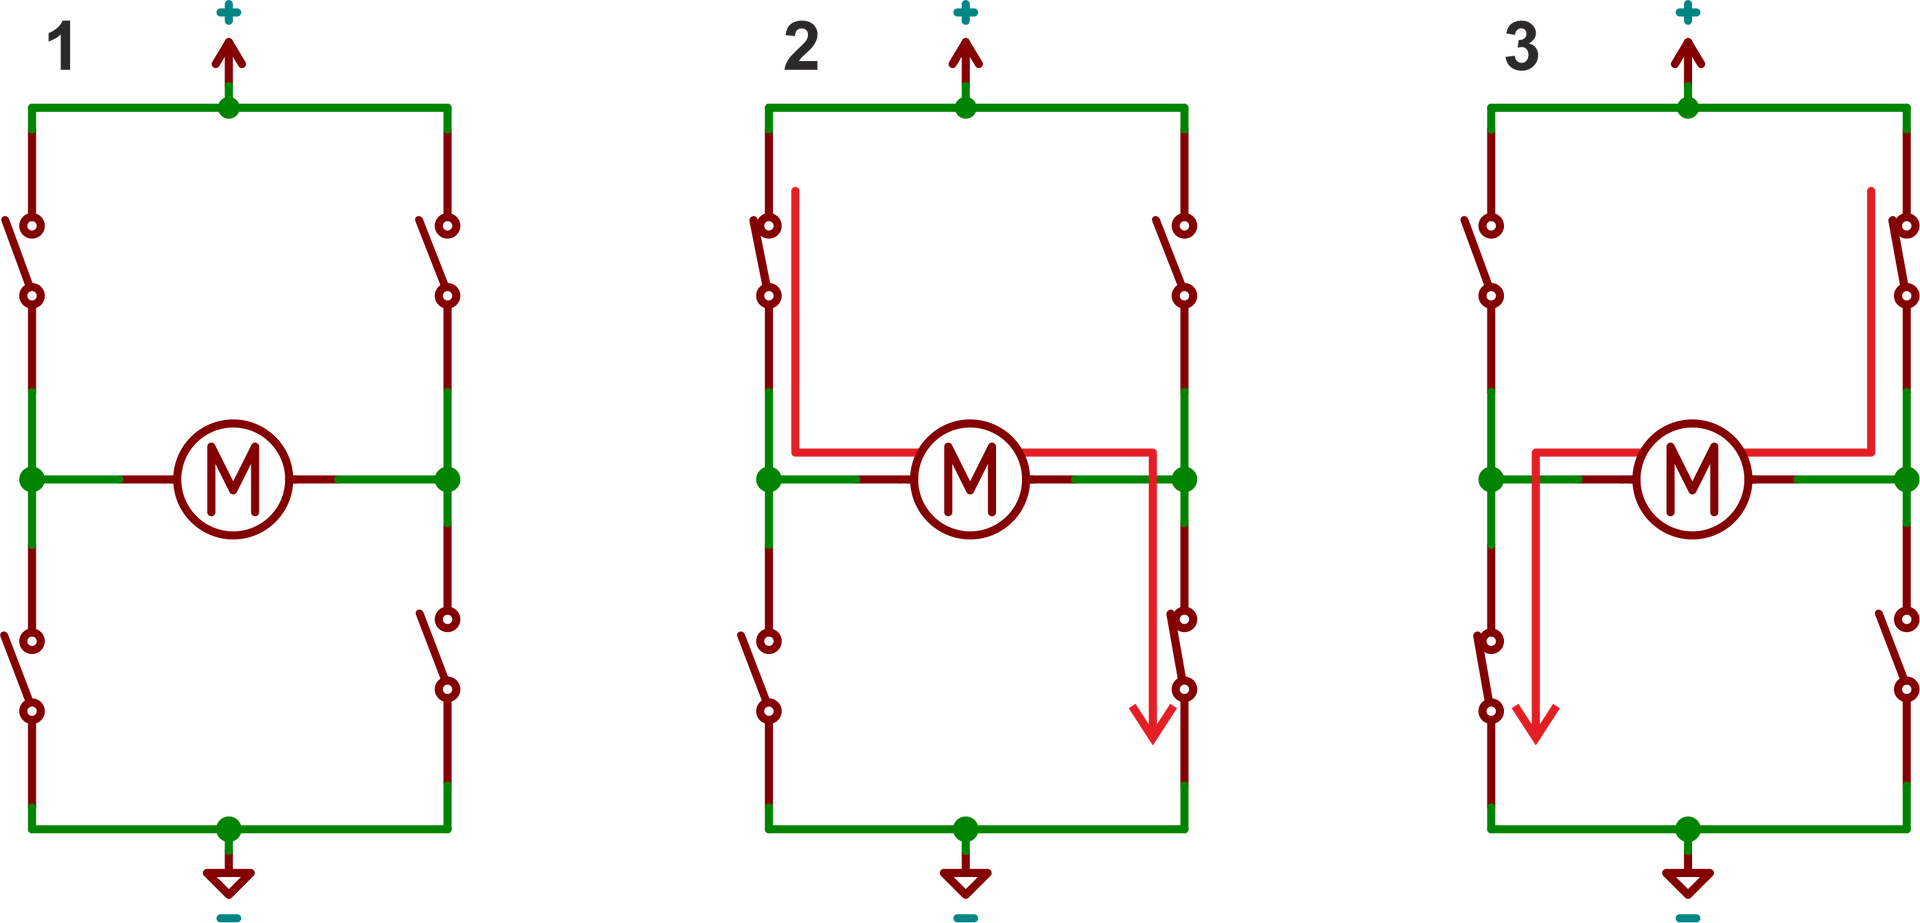 Ilustracja przedstawia konfigurację mostka H używanego do sterowania silnikiem ułożonym pośrodku układu. Przedstawiono 3 wersje przepływu prądu względem zamknięcia przełączników. Grafiki zawierają katodę układu u góry i anodę u dołu, od każdej odchodzą równolegle dwa przełączniki. Przełączniki jak i od katody, jak i od anody spotykają się przy wspólnych węzłach po lewej i po prawej stronie silnika. Pierwszy rysunek przedstawia wszystkie przełączniki otwarte. Drugi rysunek przedstawia lewy górny i prawy dolny przełącznik zamknięty. Natomiast trzeci, i ostani rysunek, przedstawia prawy górny i lewy dolny przełącznik zamknięty.